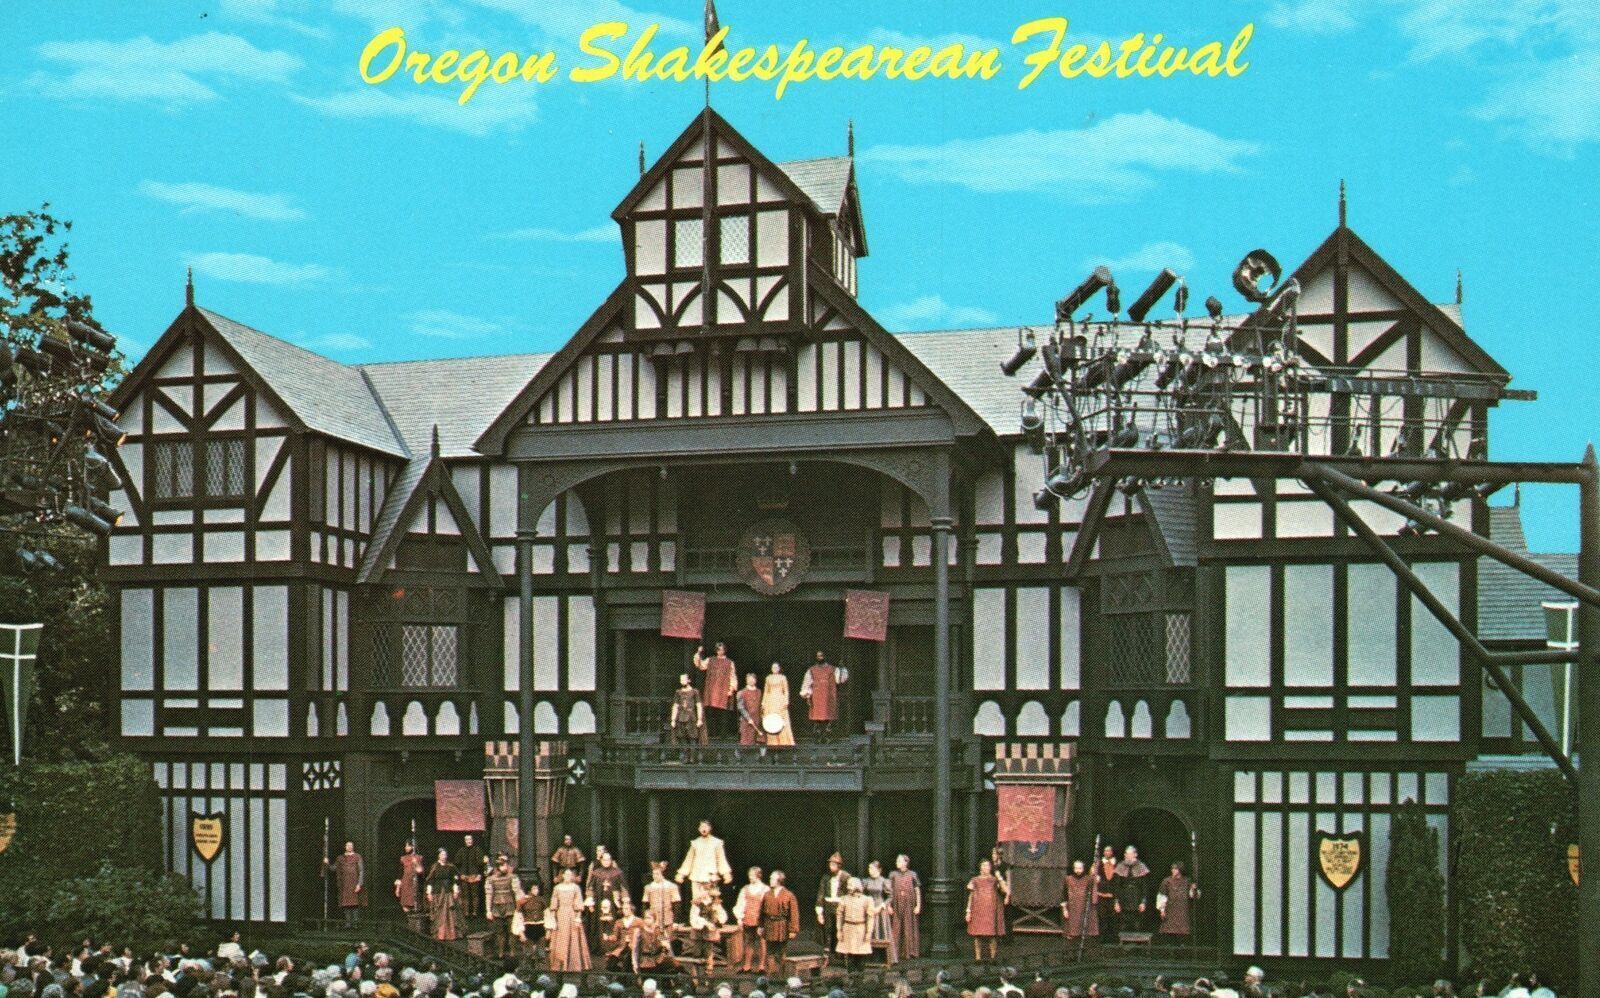 Ashland OR-Oregon, Shakespearean Festival Elizabeth Stage House Vintage Postcard